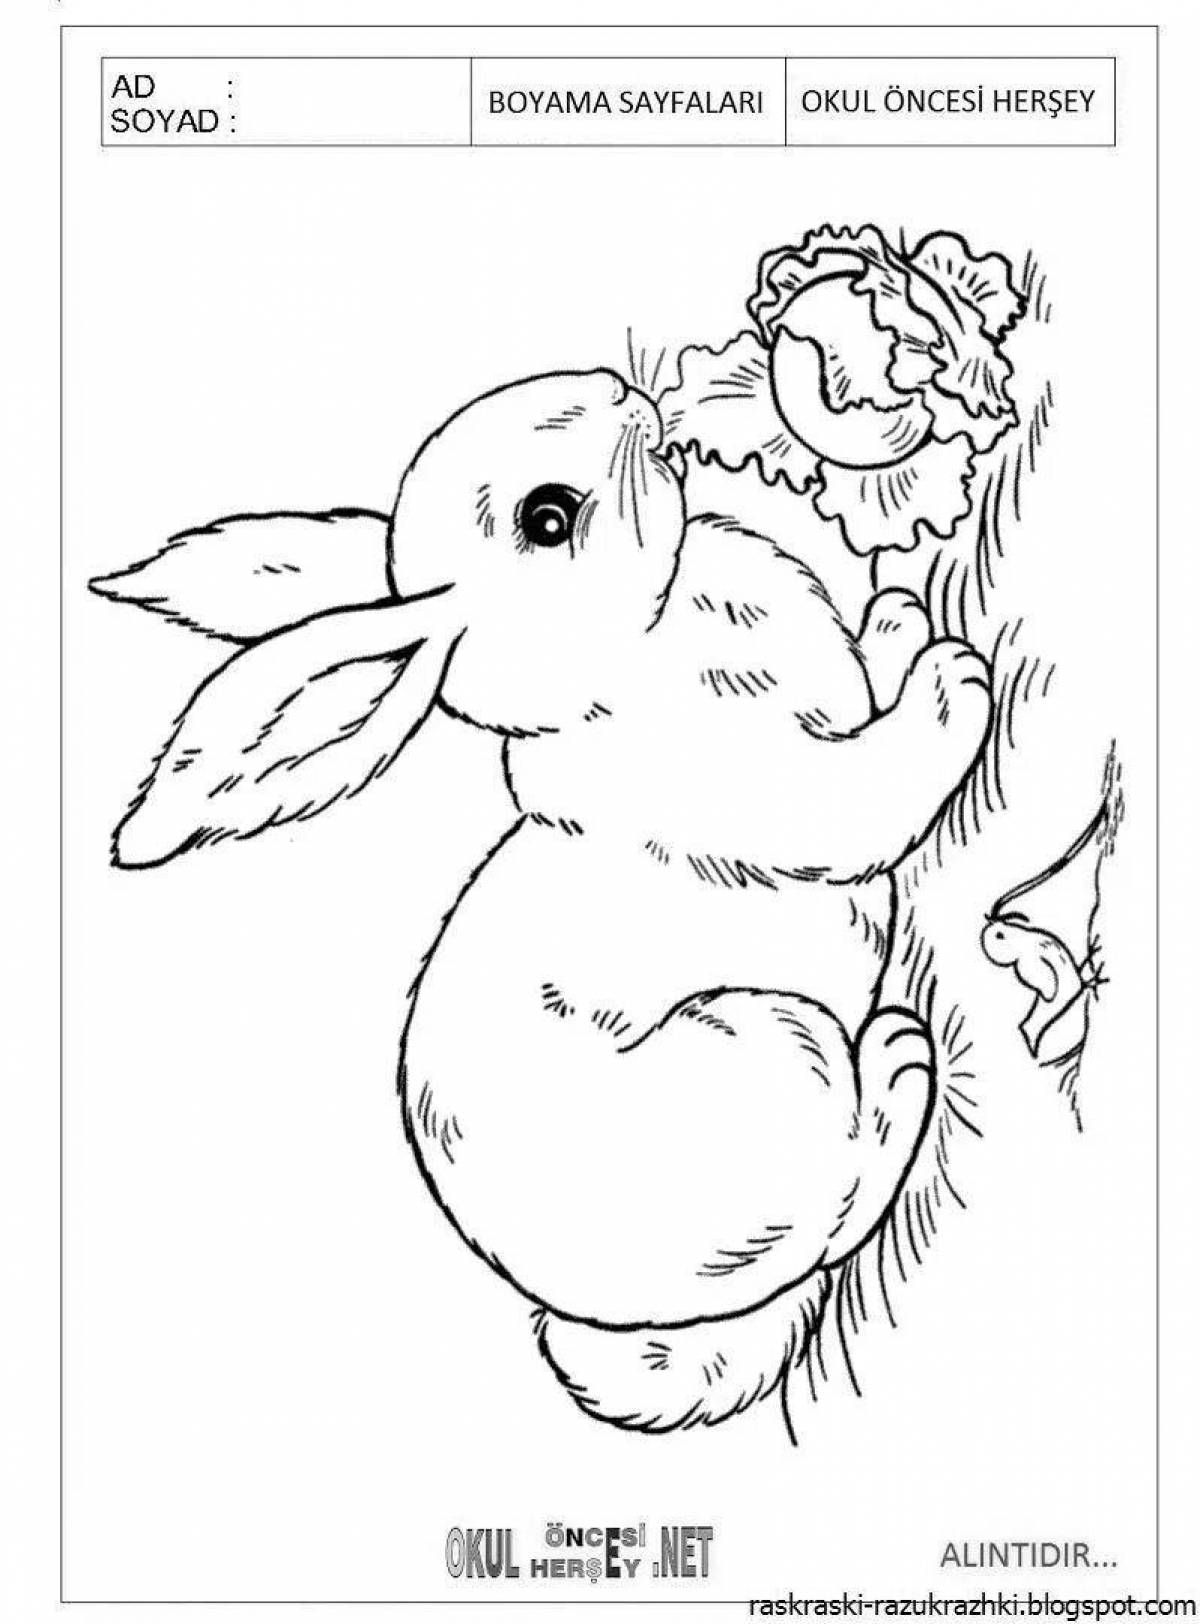 Дружелюбный кролик-раскраска для детей